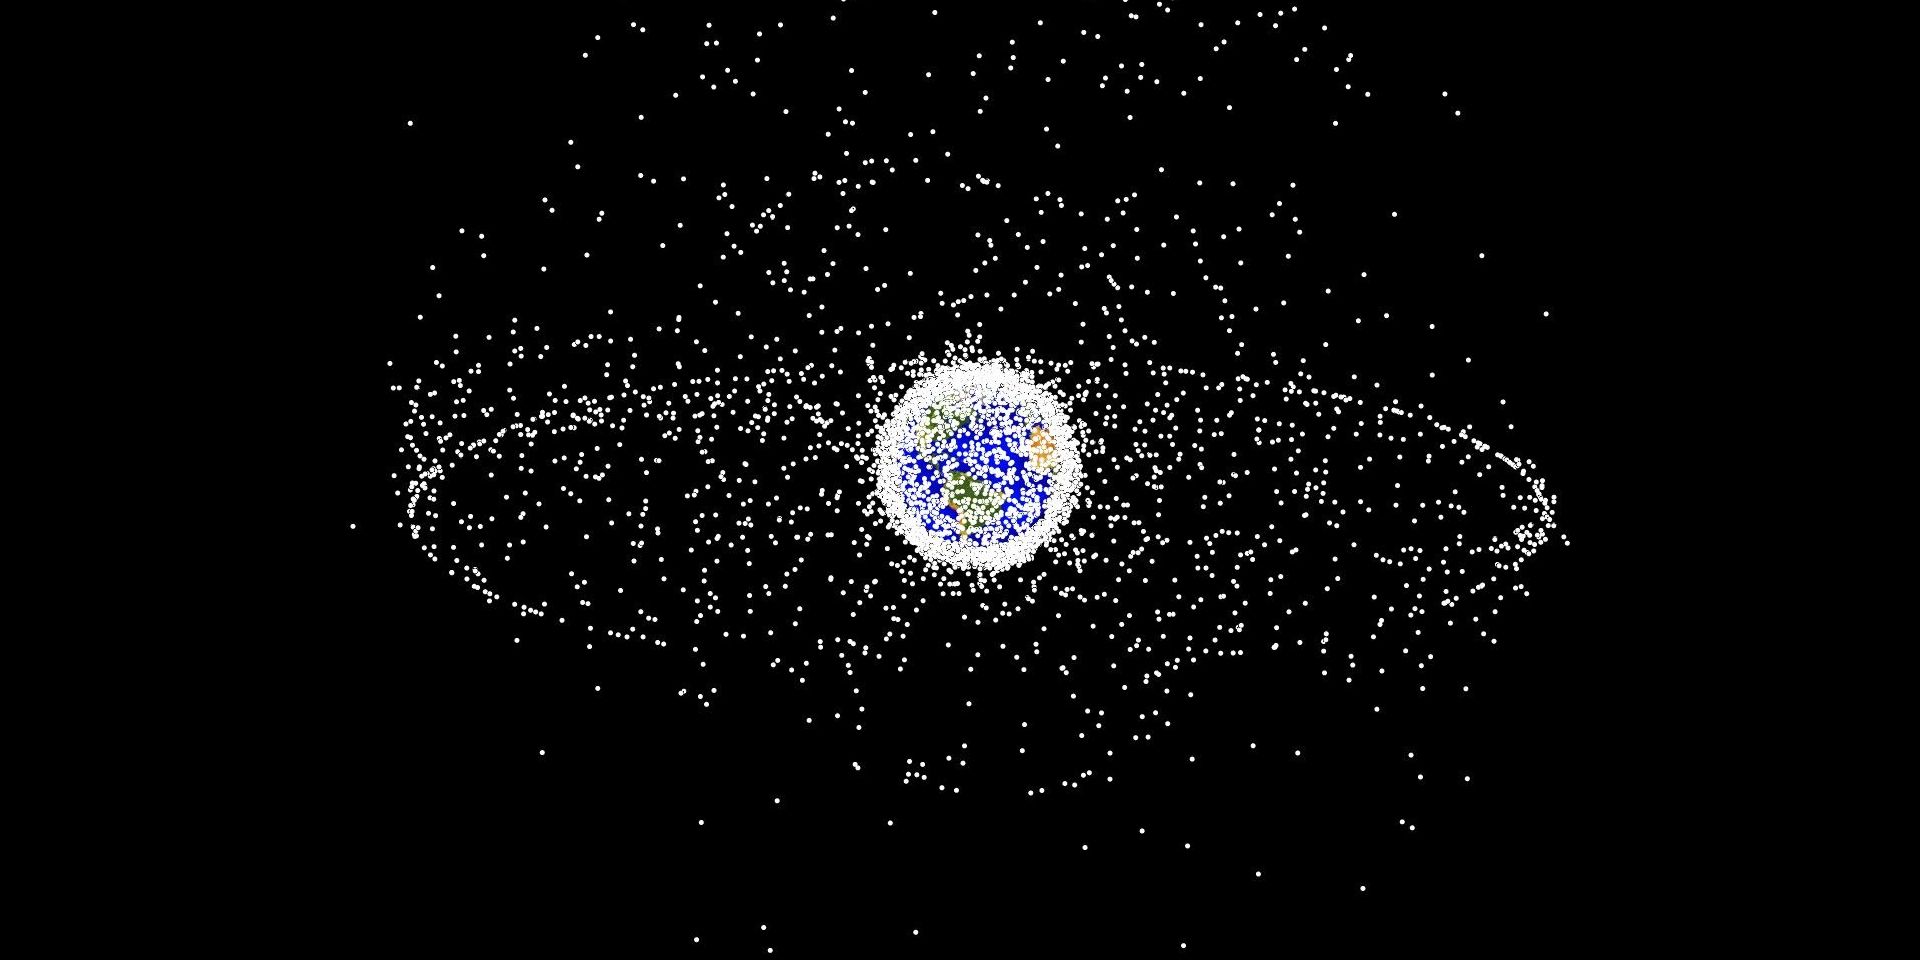 Representação gerada por computador da localização de detritos espaciais, como pode ser visto da órbita alta da Terra.